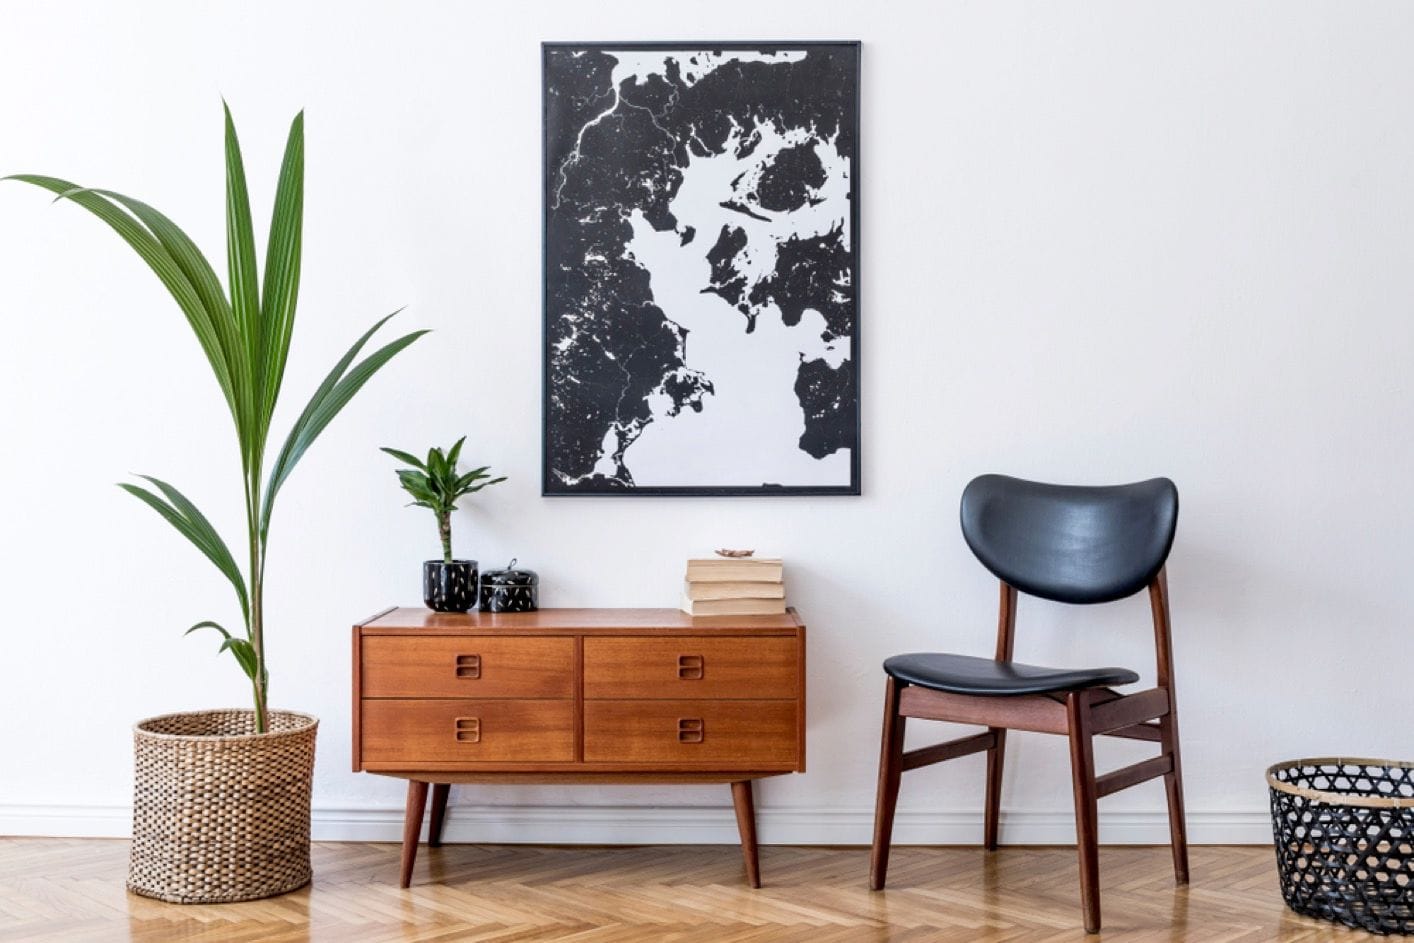 Salon avec meuble rétro en bois, chaise, plante tropicale dans un pot en rotin, panier